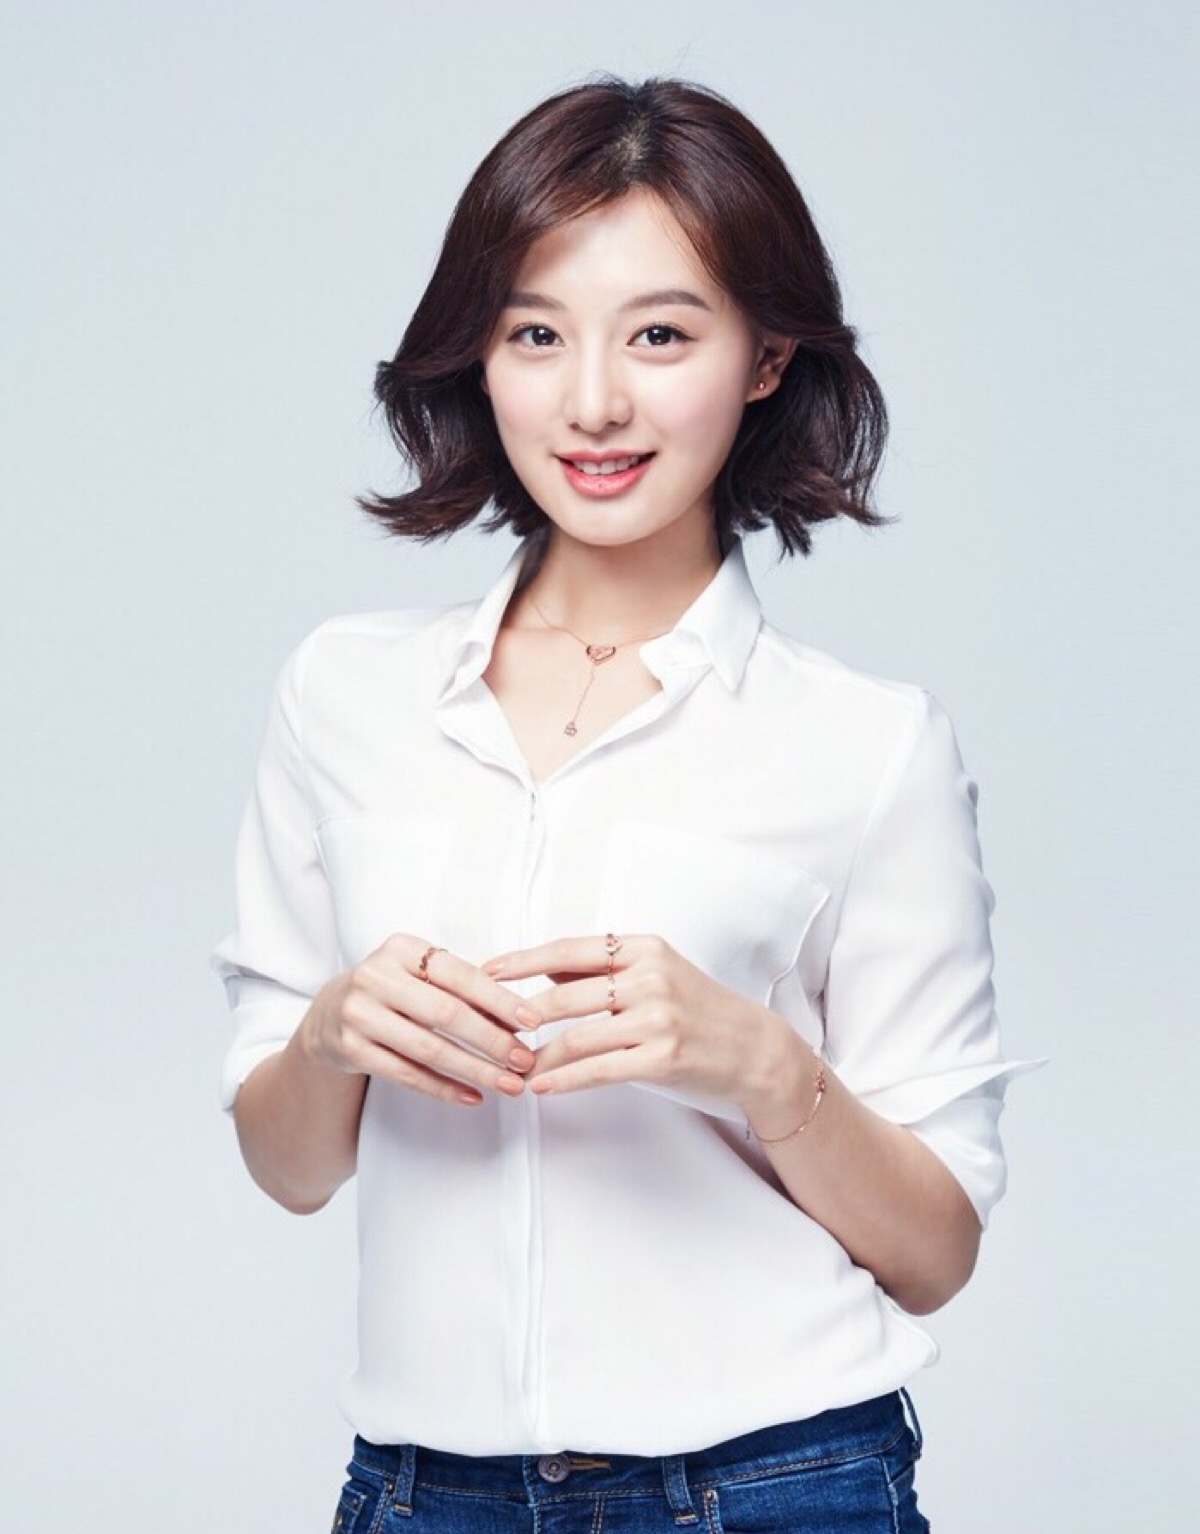 金智媛,1992年10月19日出生于韩国首尔,韩国女演员